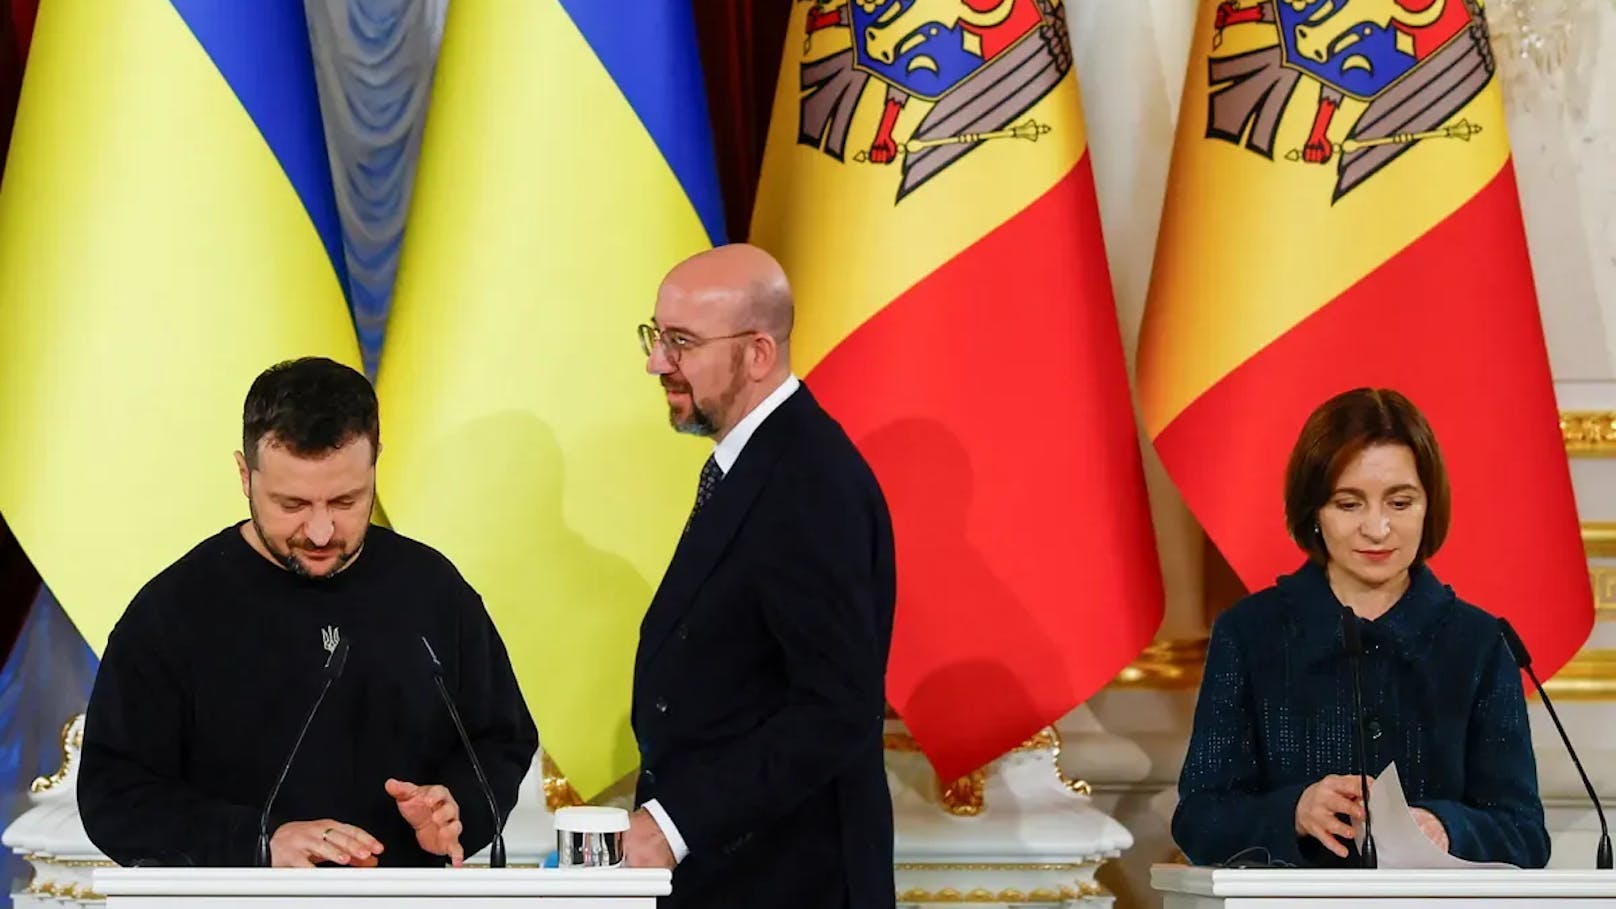 "Historischer Moment" – Ukraine bald in der EU?